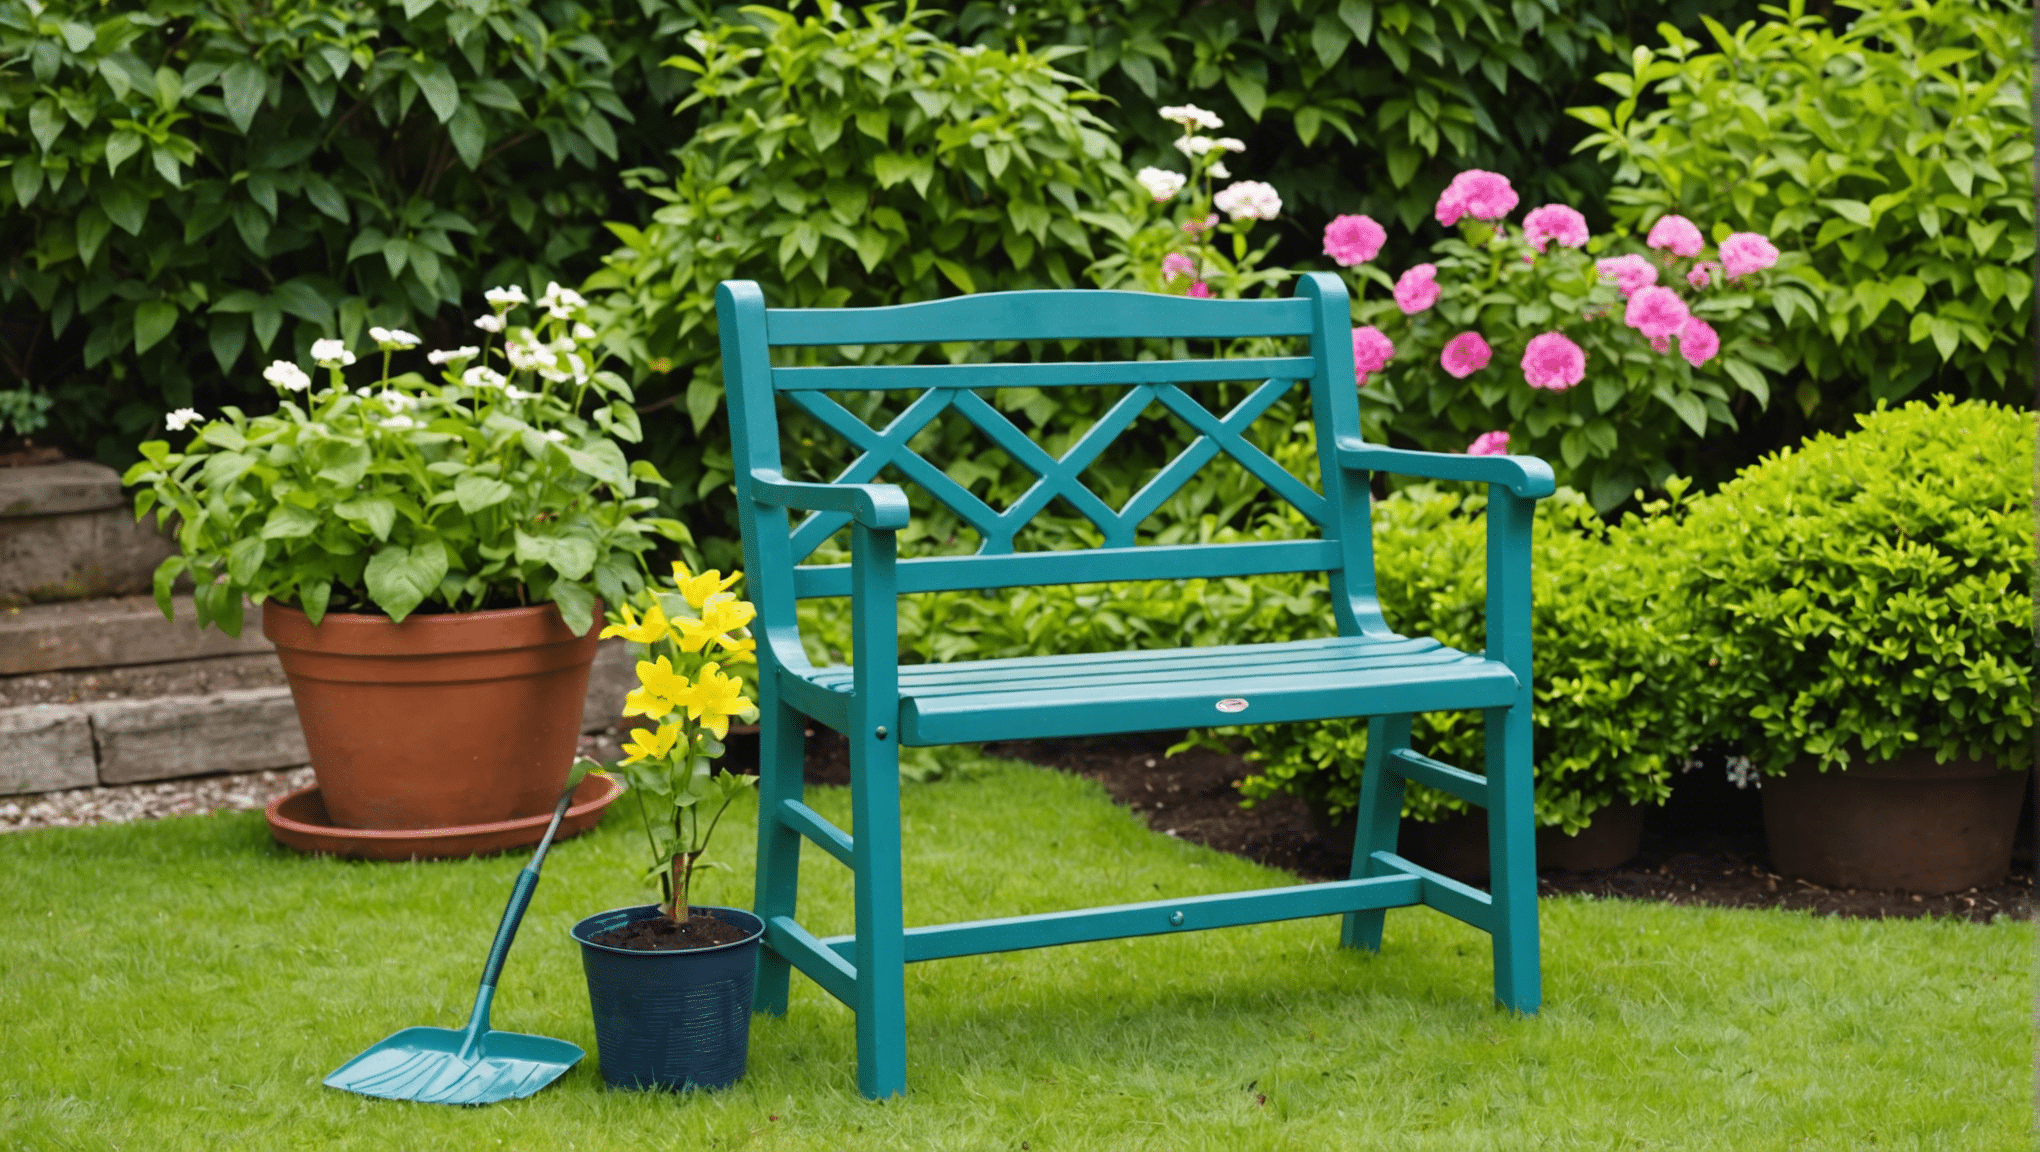 ガーデニングシートを使用する利点と、それがガーデニング体験をどのように向上させるかを発見してください。庭で楽しい時間を過ごしながら、腰と膝を守りましょう。